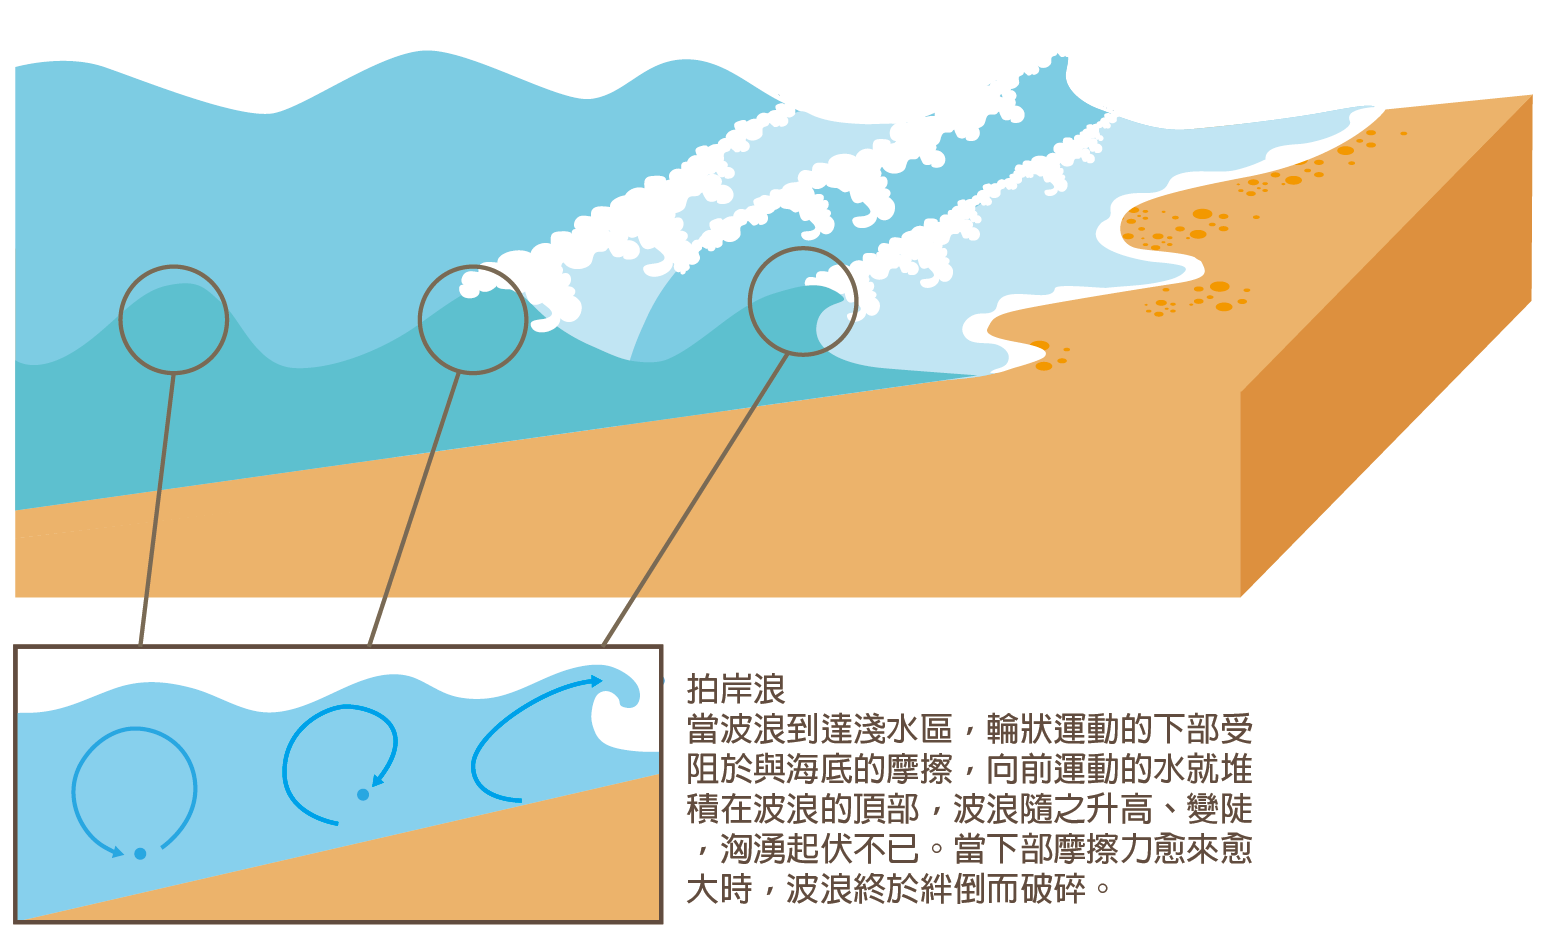 波浪靠近岸邊時，水分子的圓周運動因海底地形的摩擦力影響而波速變小，向前運動的水分子逐漸堆高；當波峰被迫向前時，失去底部支撐力，向下掉落破碎，形成浪花